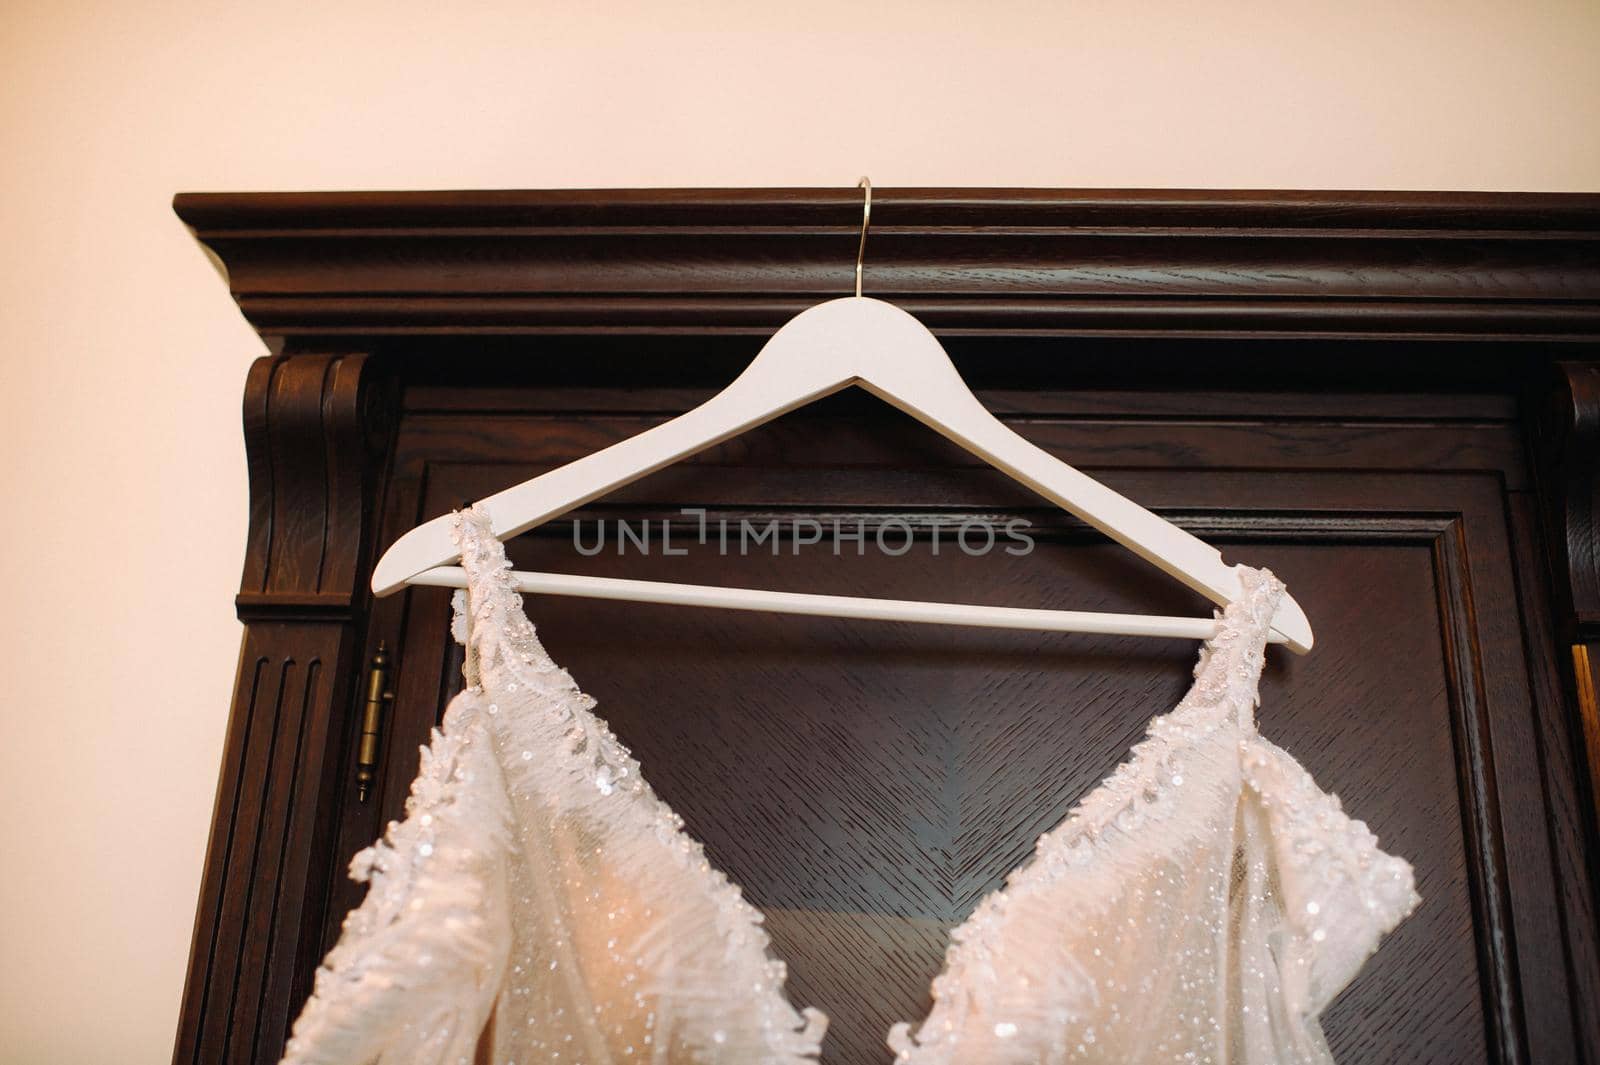 Vintage Wedding dress hanging on a wooden hanger.